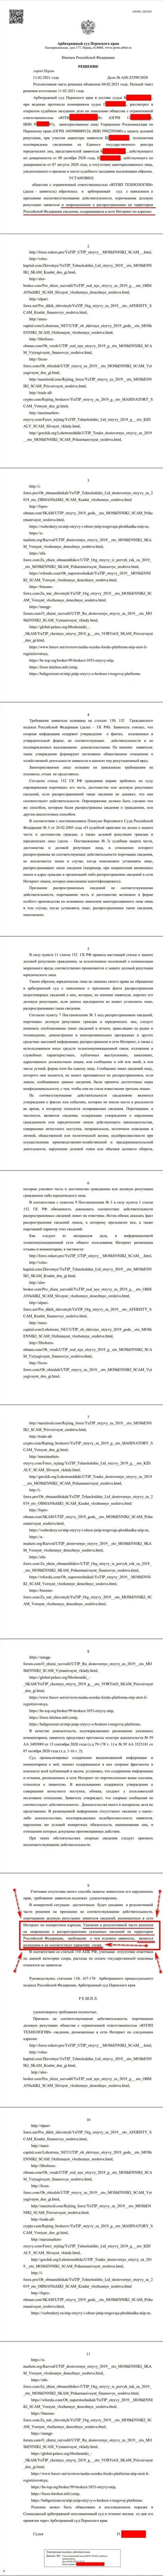 Решение Арбитражного суда г. Перми по исковому заявлению жуликов UTIP в отношении web-сервиса Форекс Брокерс Про